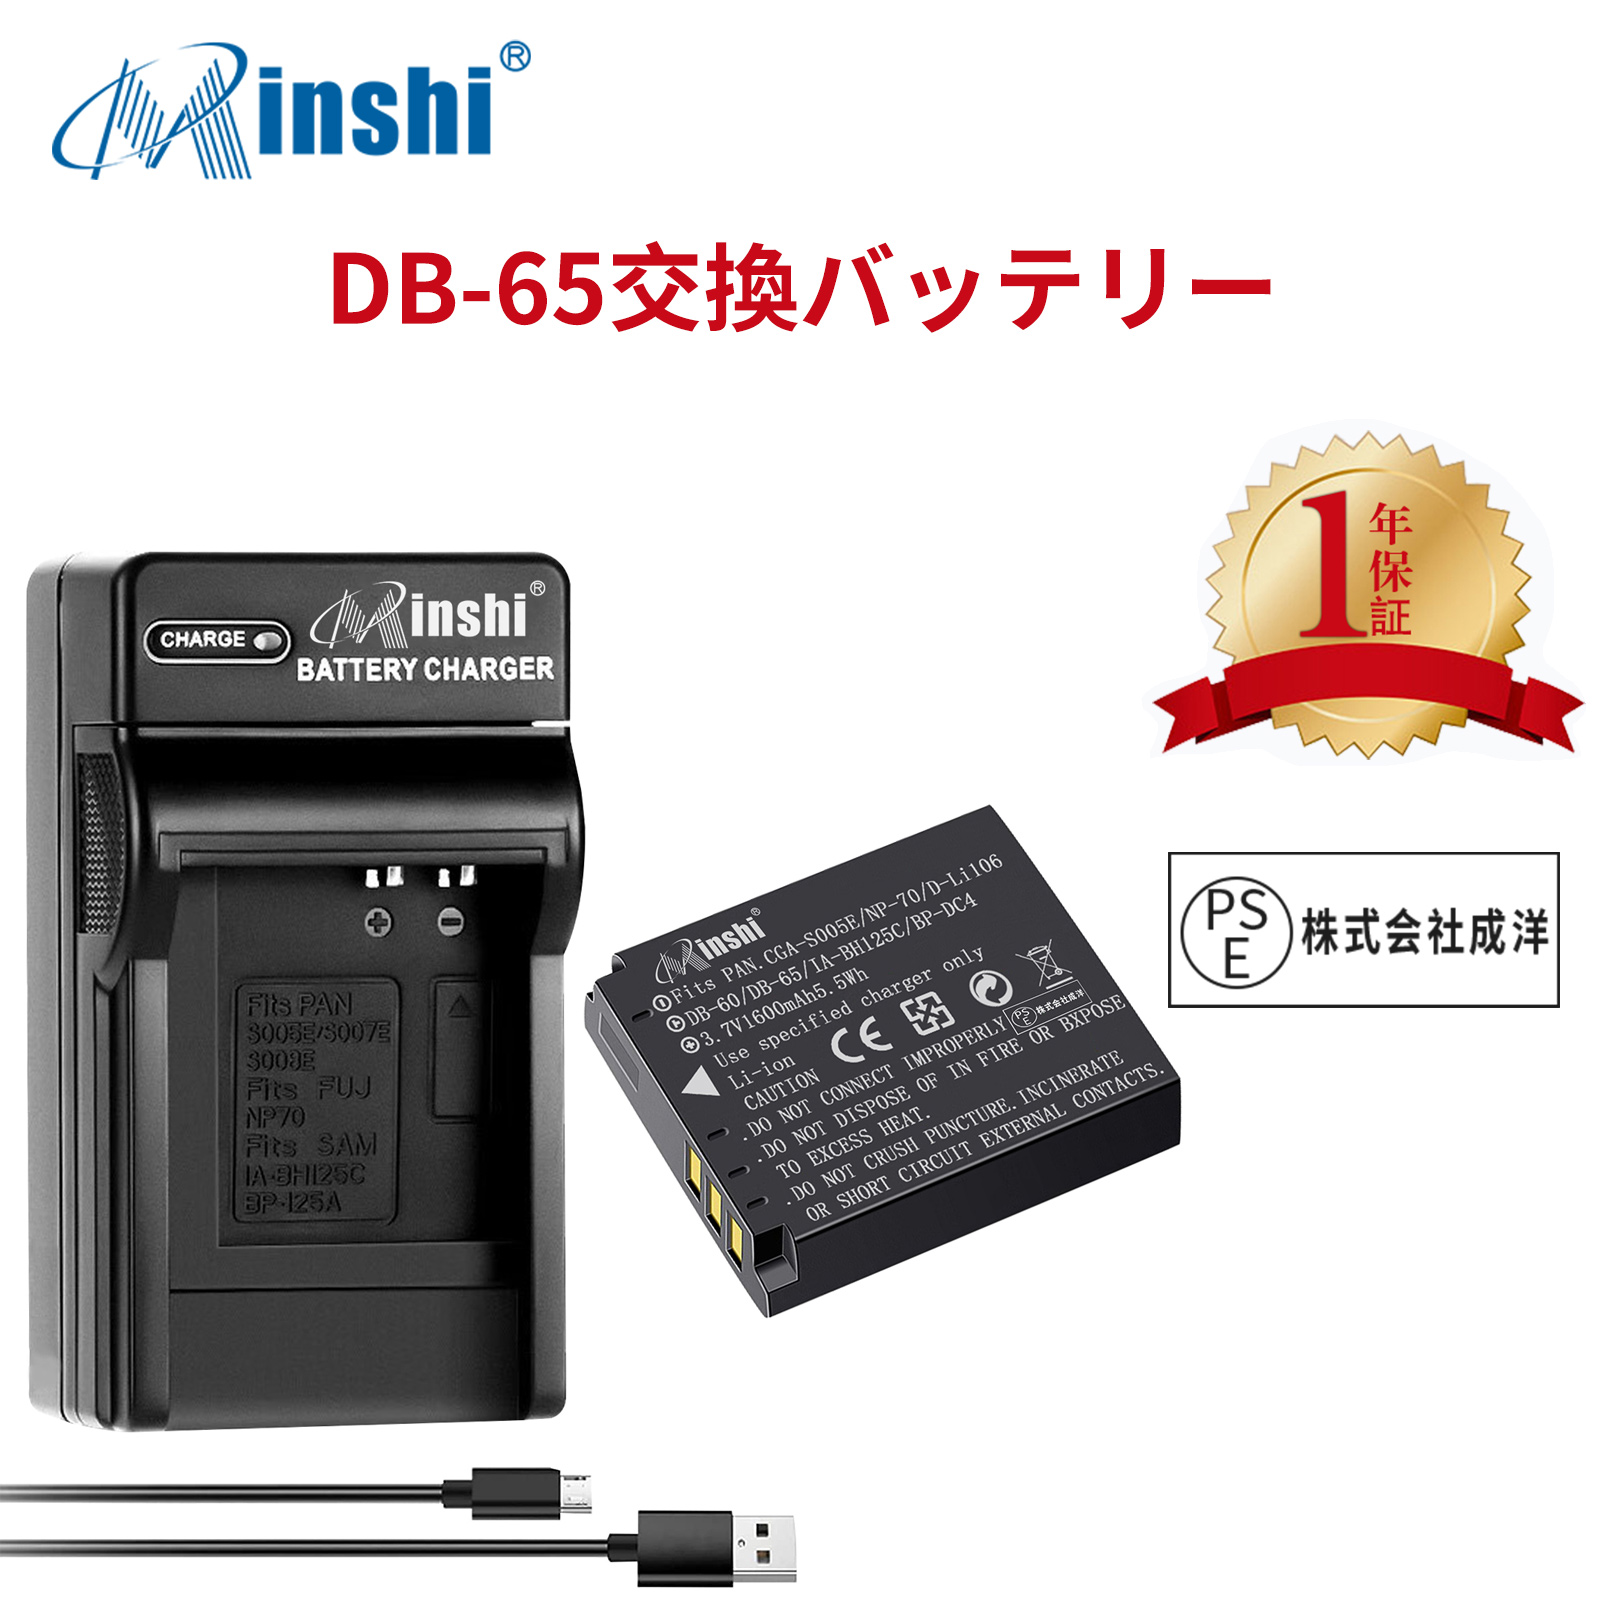 【1年保証】minshi RICOH III Caplio R3 DB-100【1600mAh 】 DB-100【DMW-BCC12換急速USBチャージャー】 高品質交換バッテリー